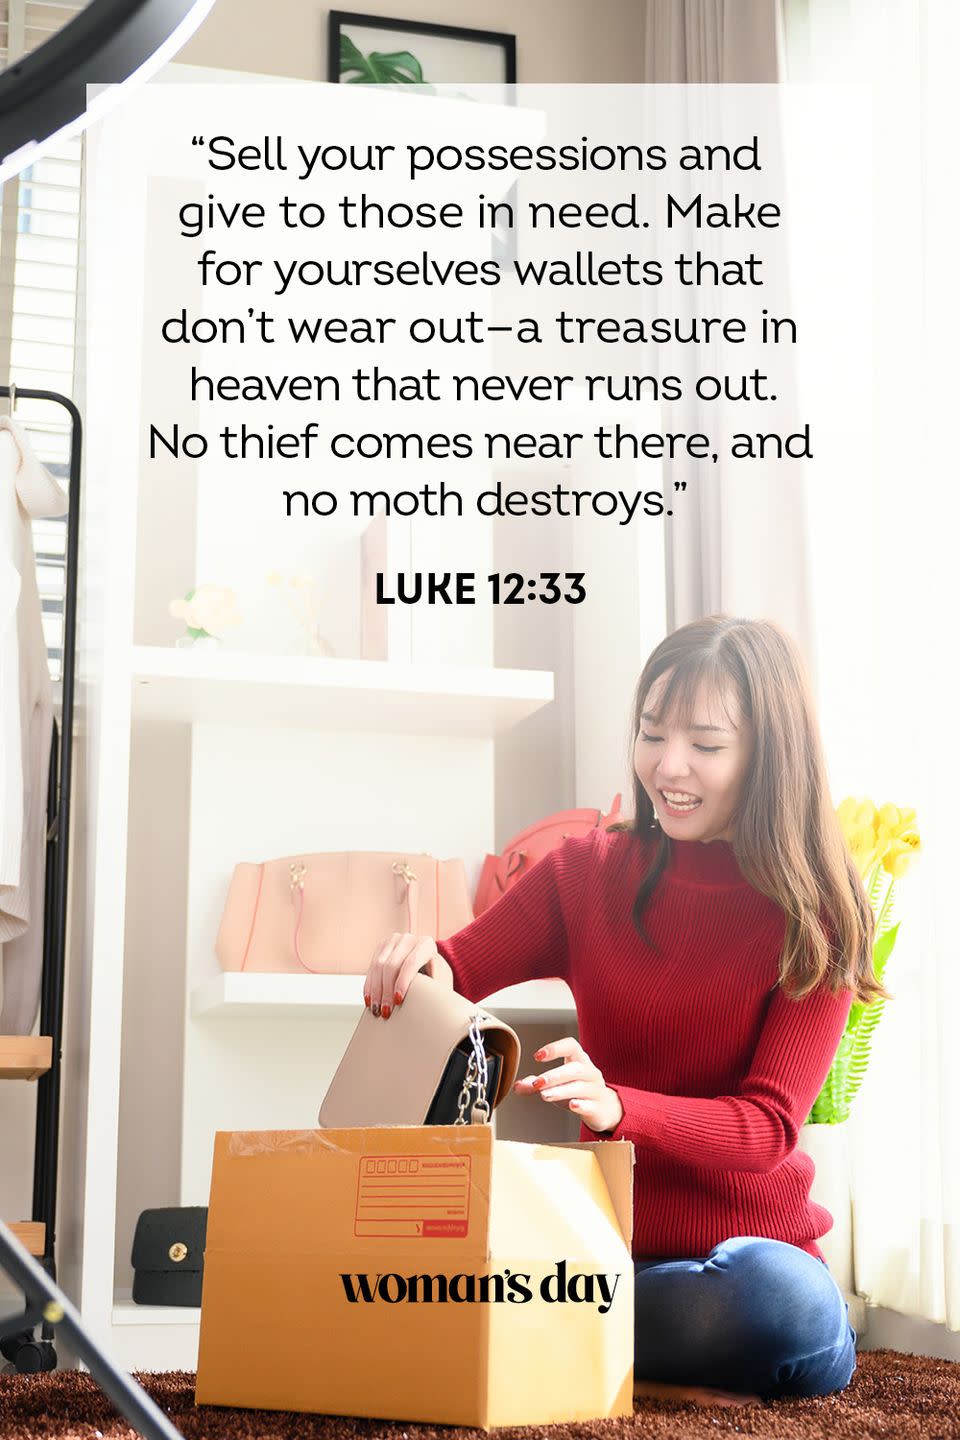 Luke 12:33